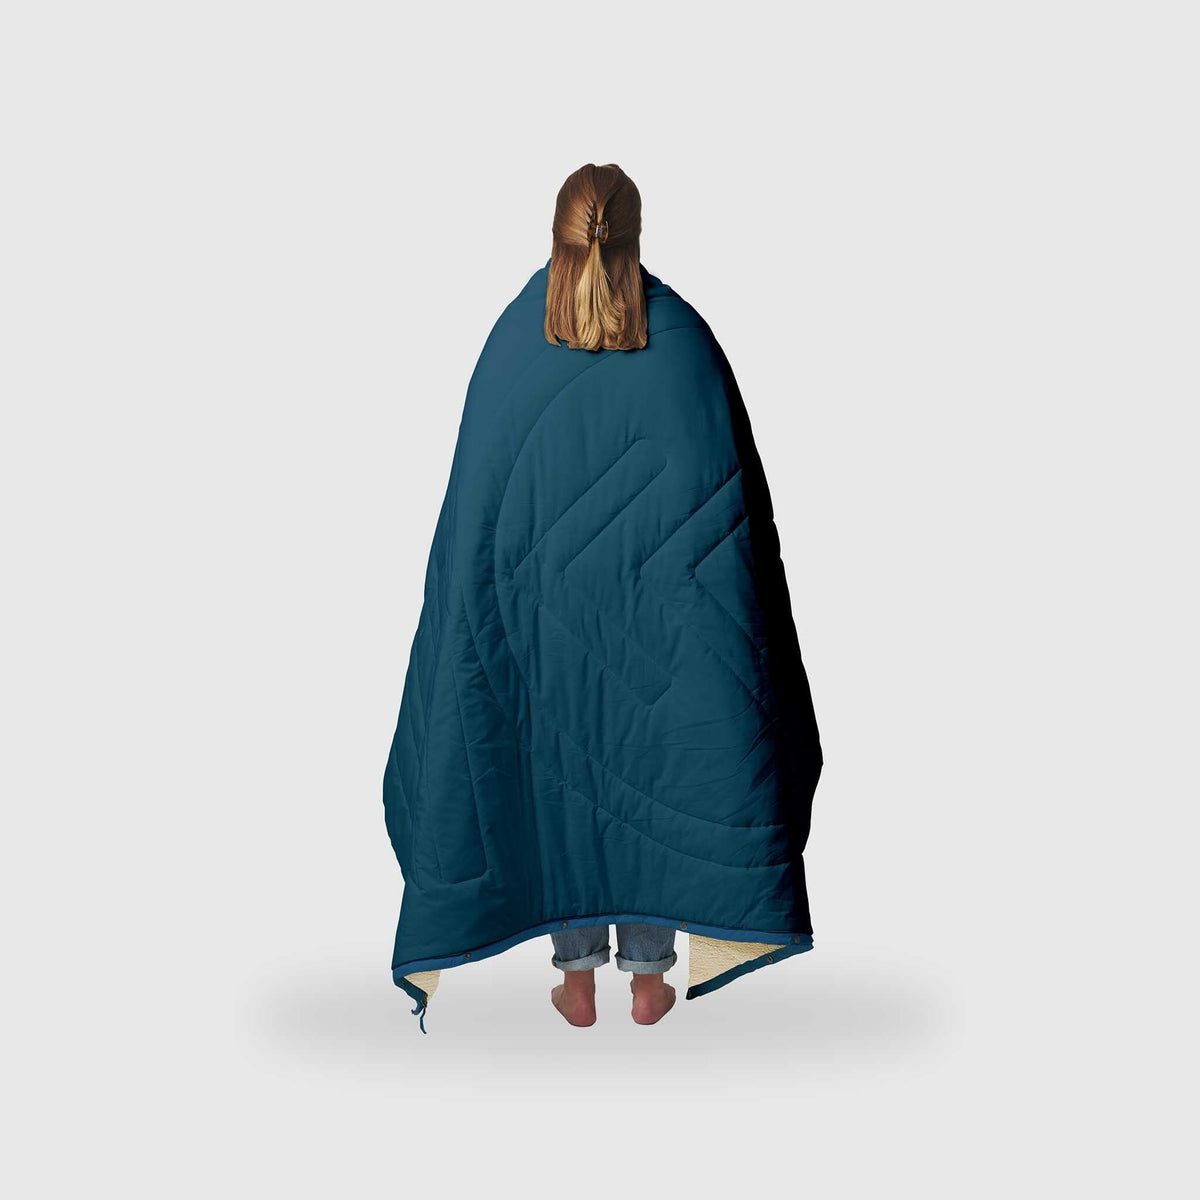 VOITED CloudTouch® Indoor/Outdoor Camping Blanket - Blue Steel